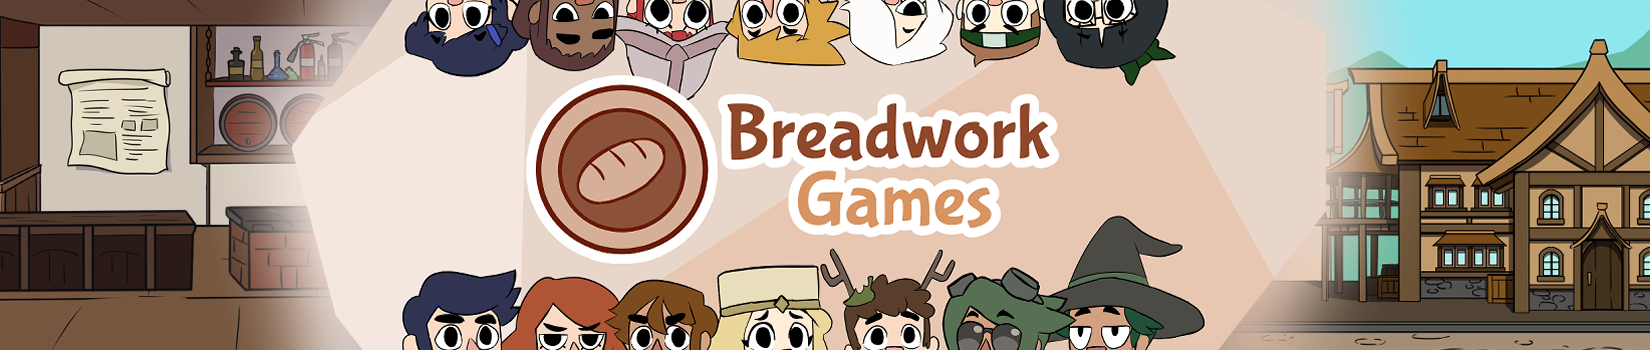 BreadworkGames